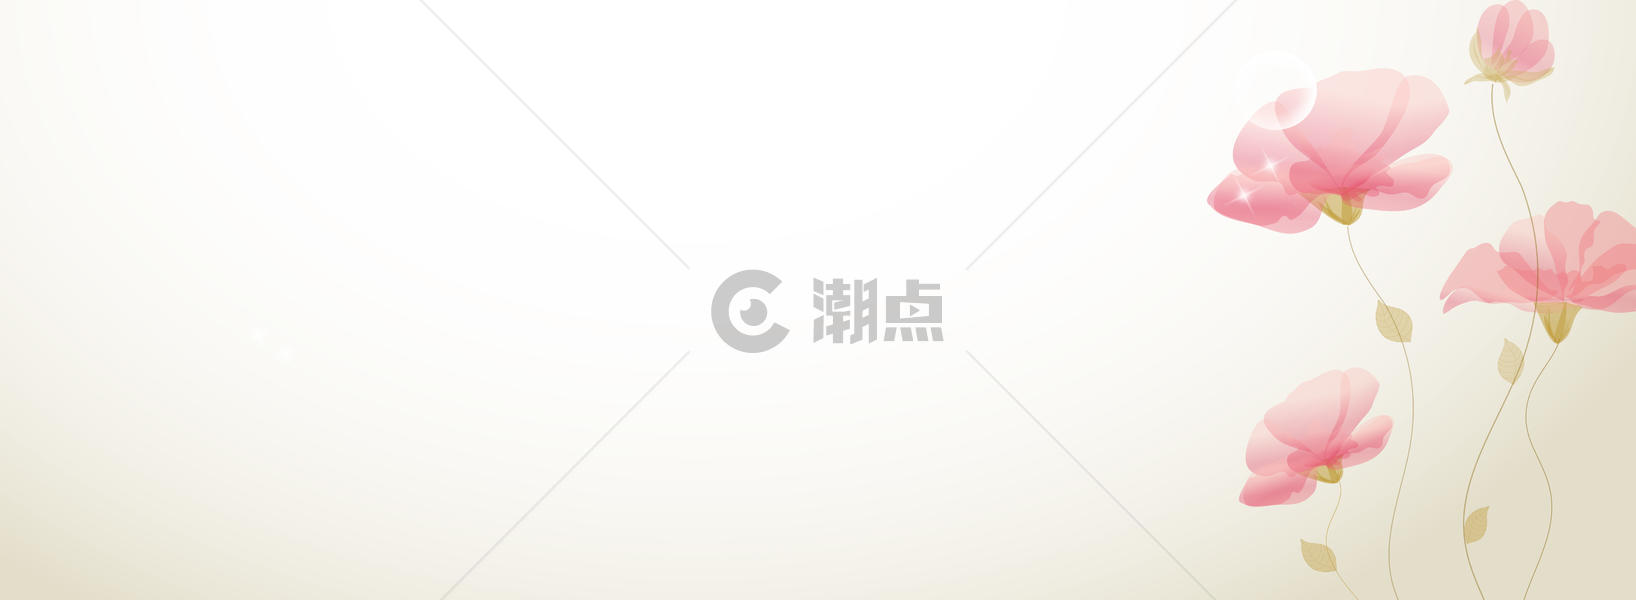 小清新banner图片素材免费下载